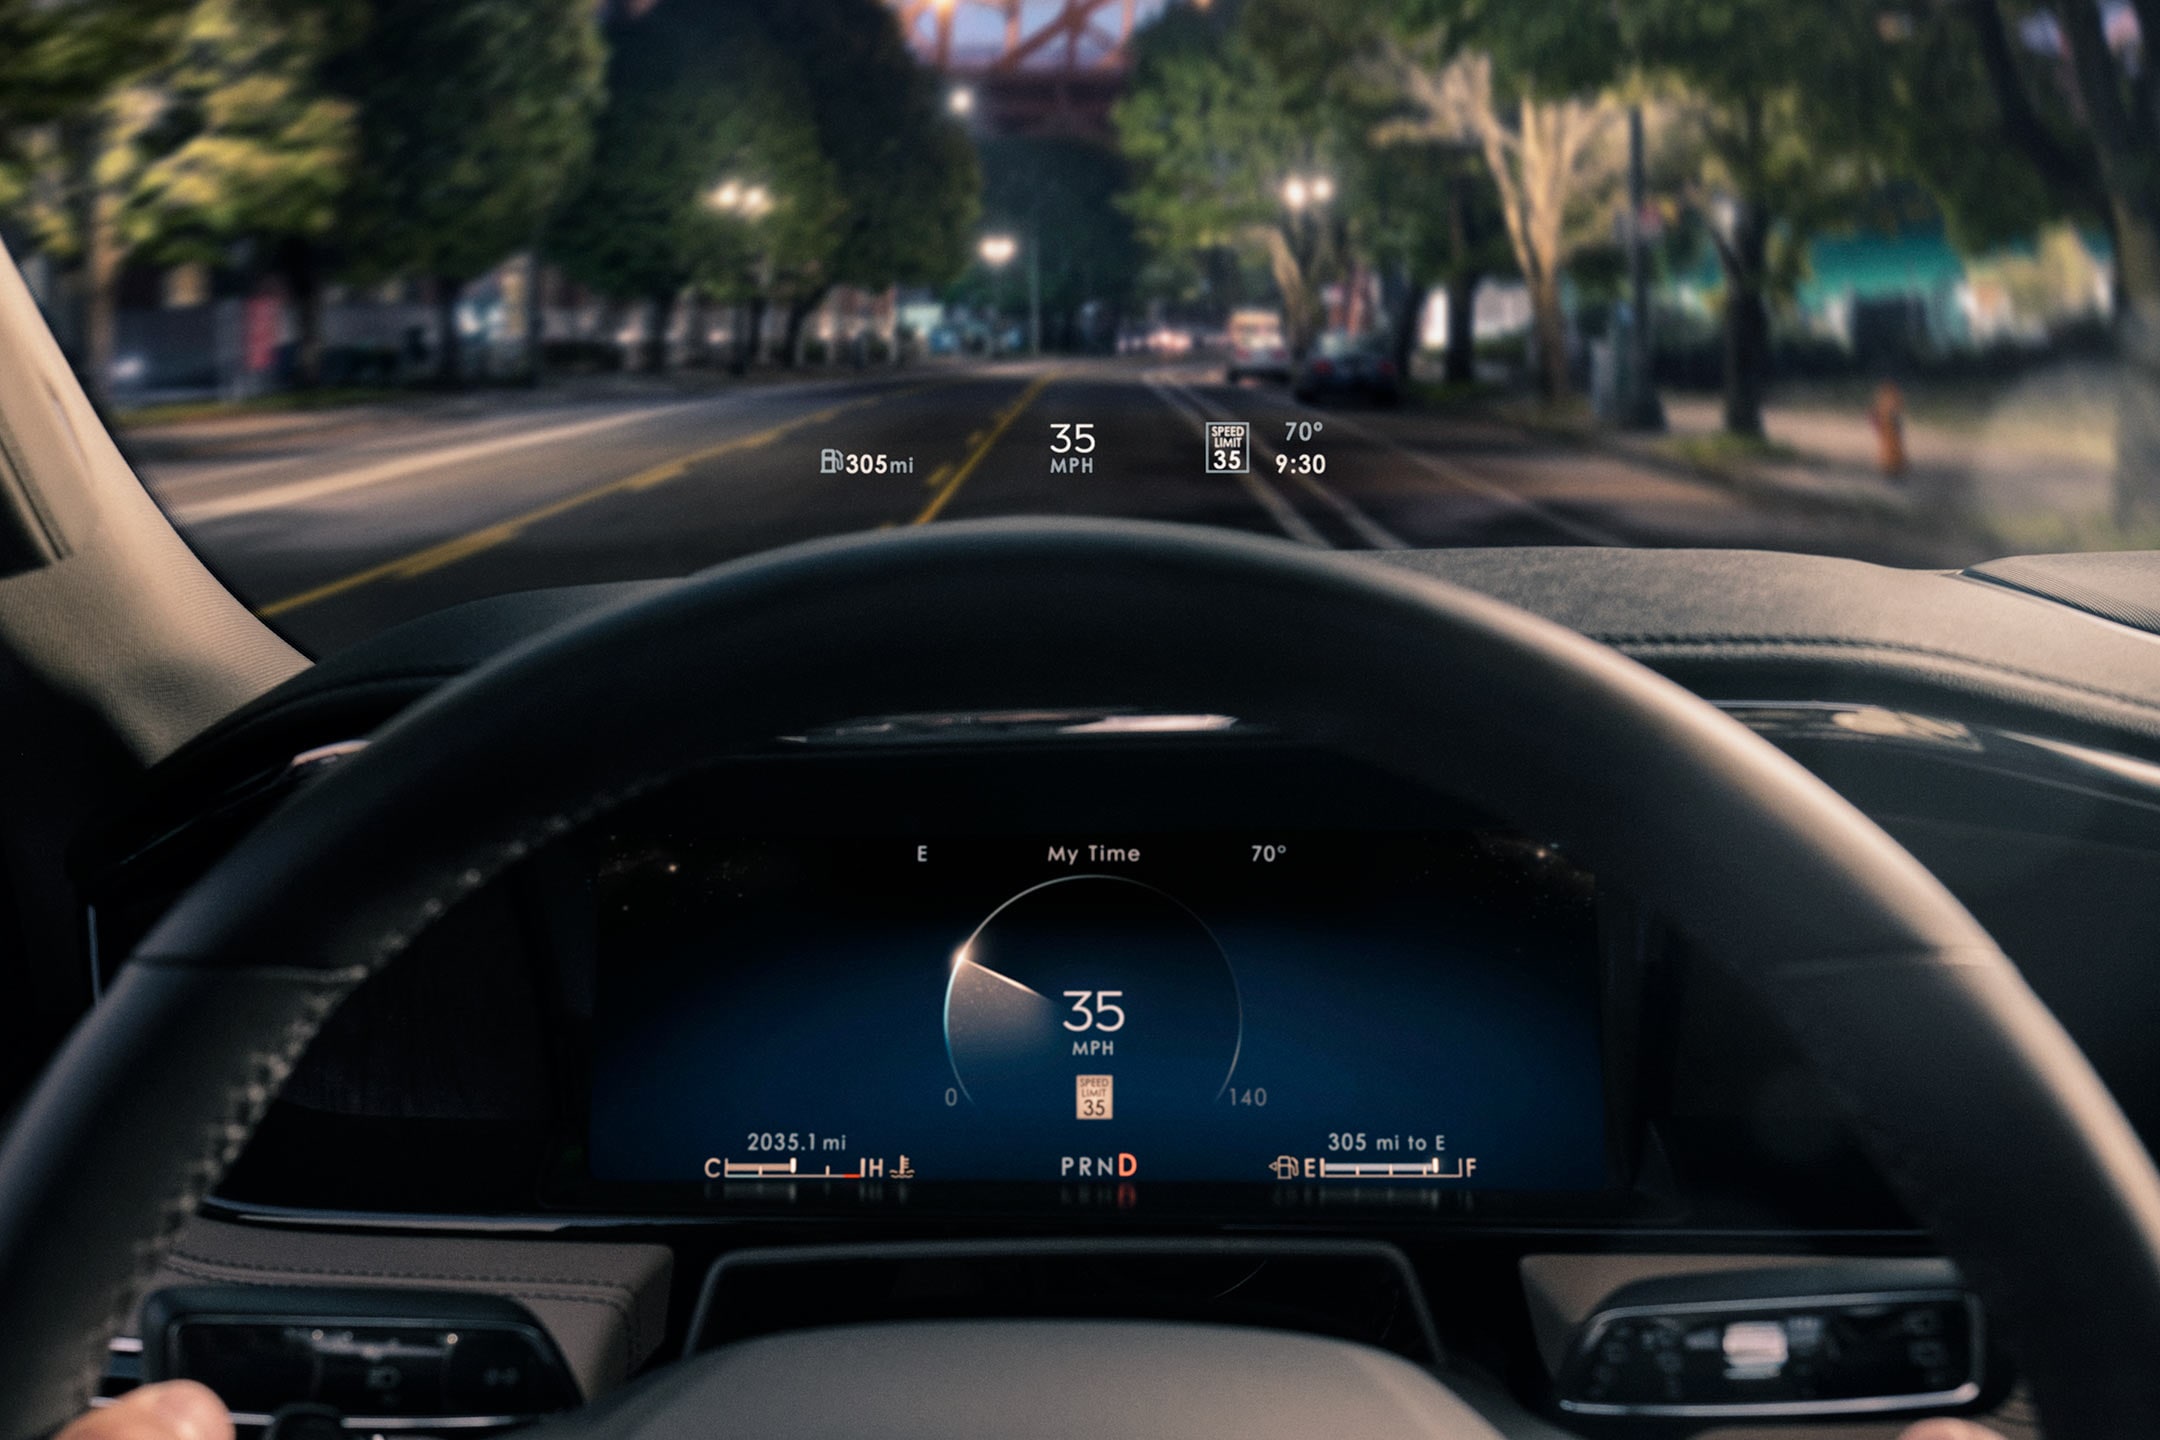 La pantalla frontal proyecta información básica para el conductor sobre el volante.